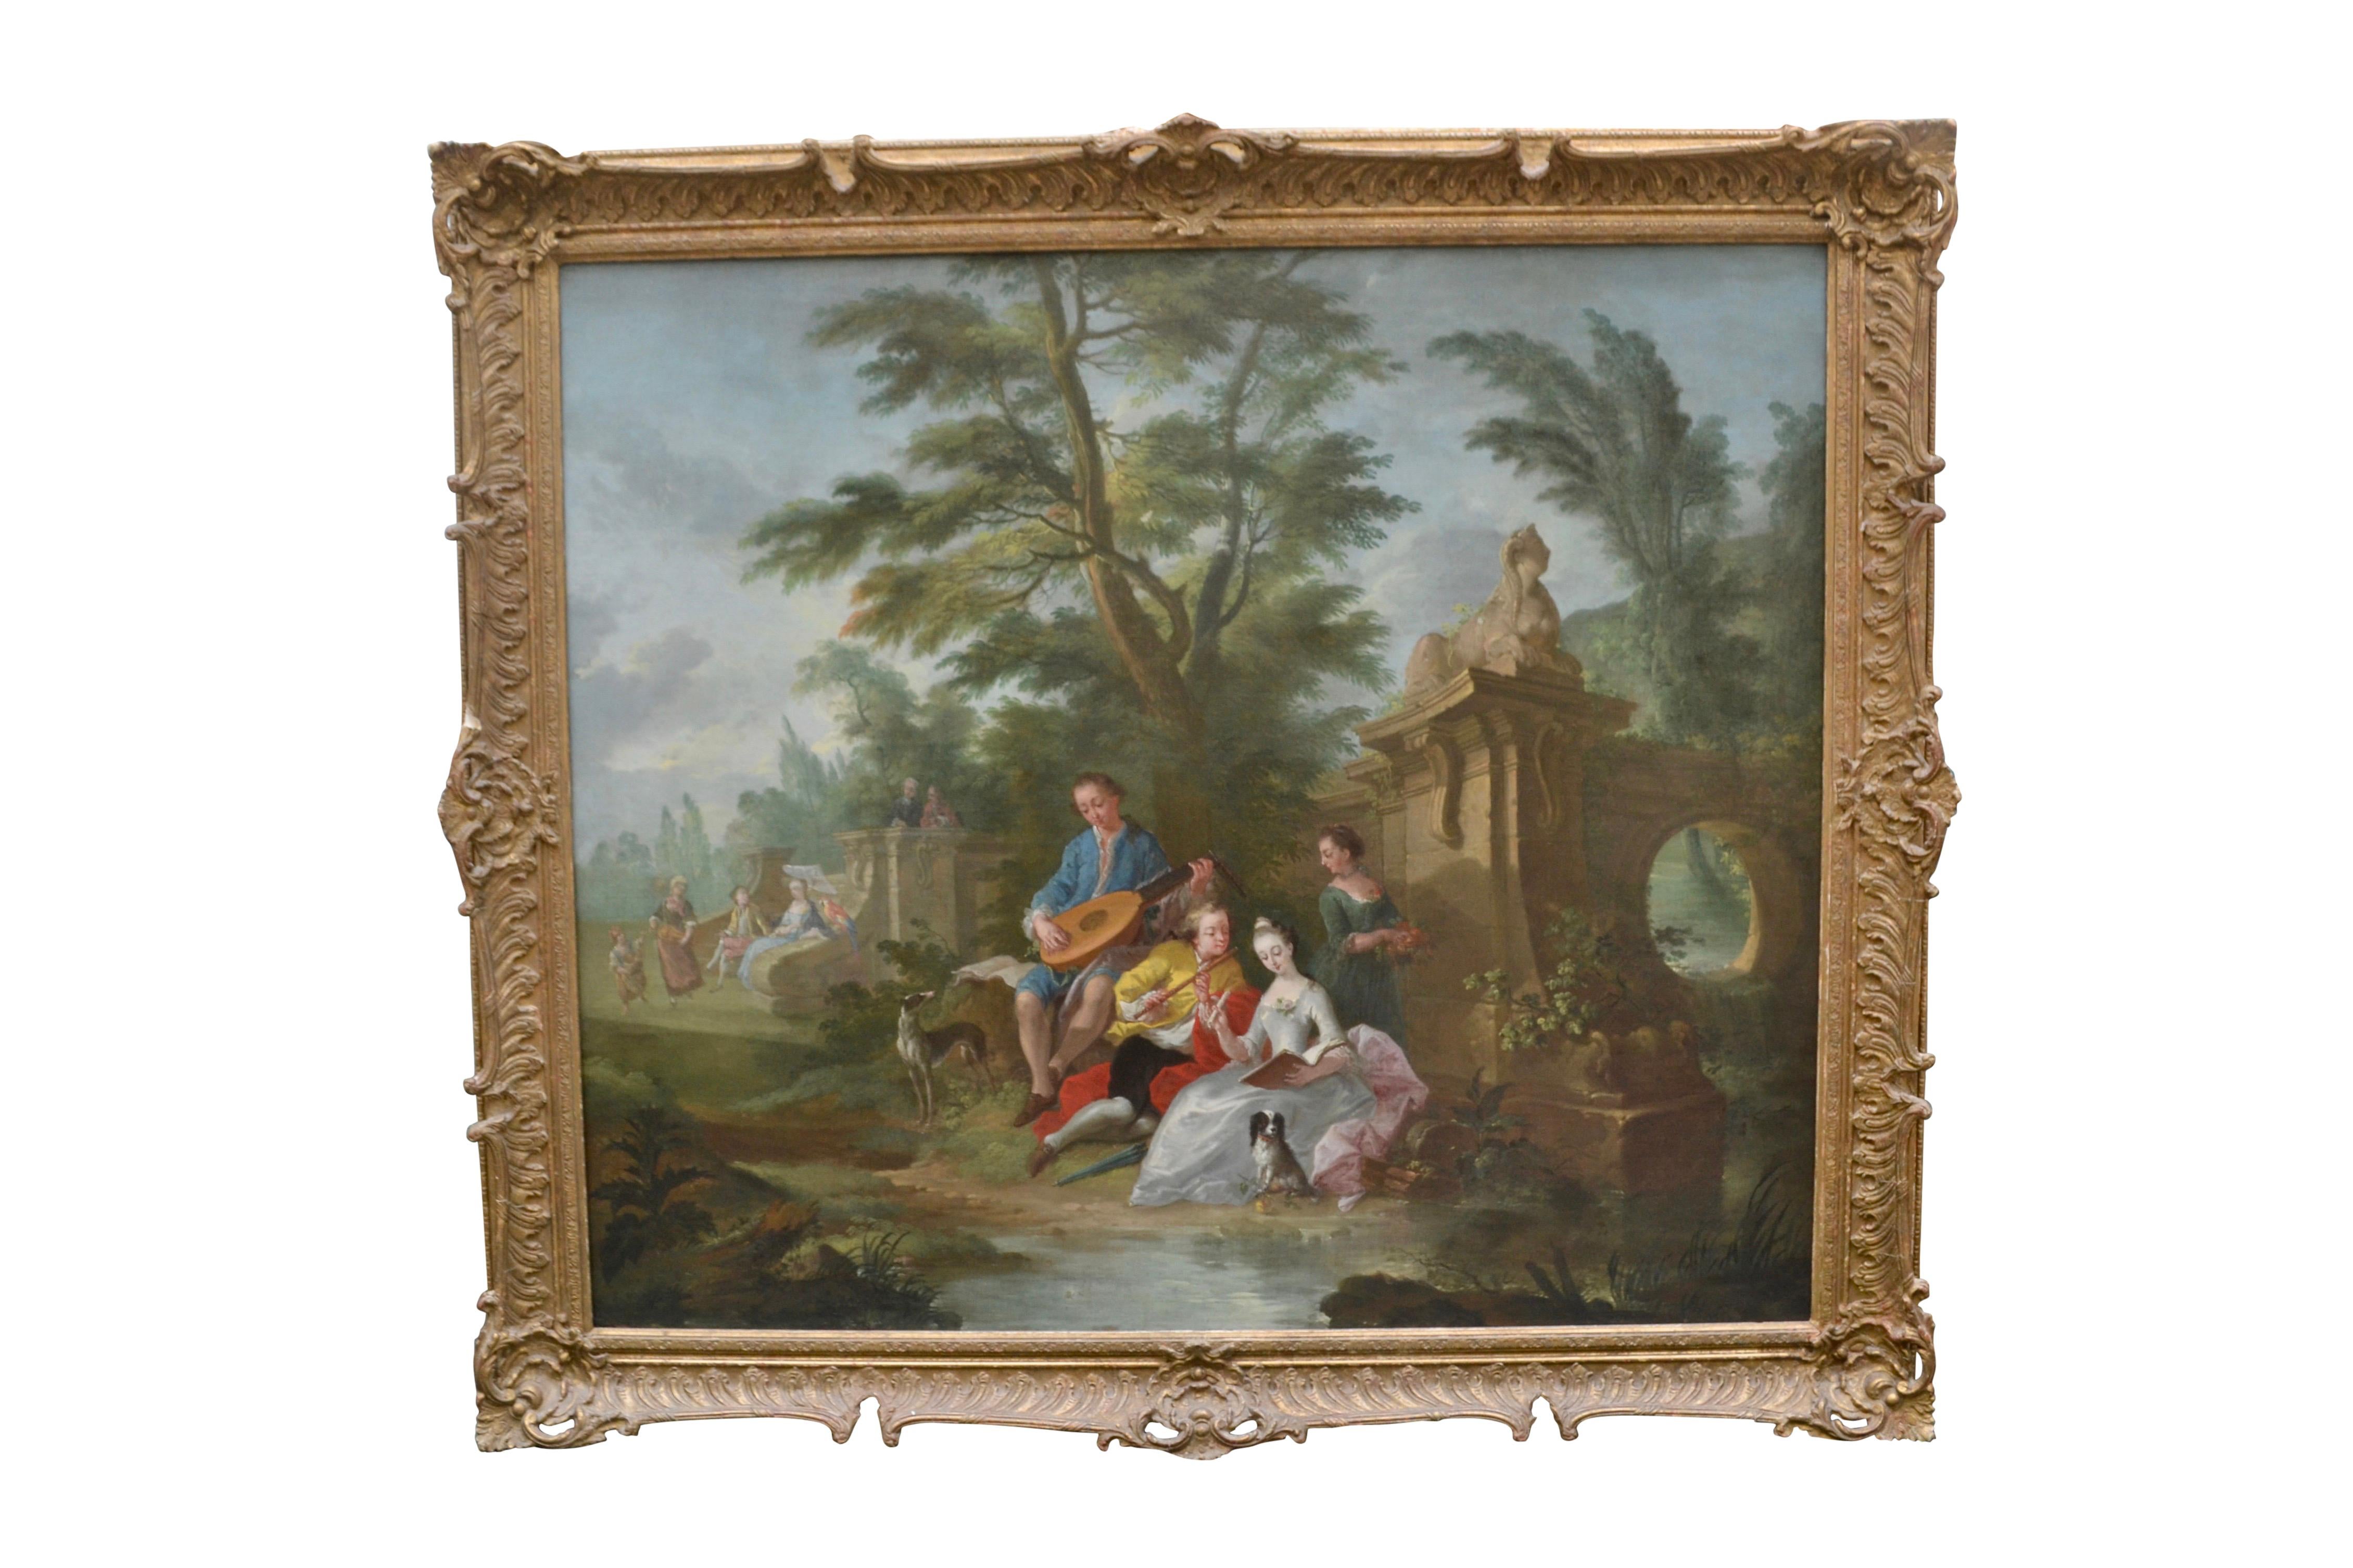 Ein romantisches Ölgemälde auf Leinwand aus dem 18. Jahrhundert, das zwei junge Paare in einer idyllischen Landschaft zeigt. Die Figuren sitzen an einem Bach neben einer Gartenlaube und haben ihre Haustiere dabei. Die beiden Männer bringen den